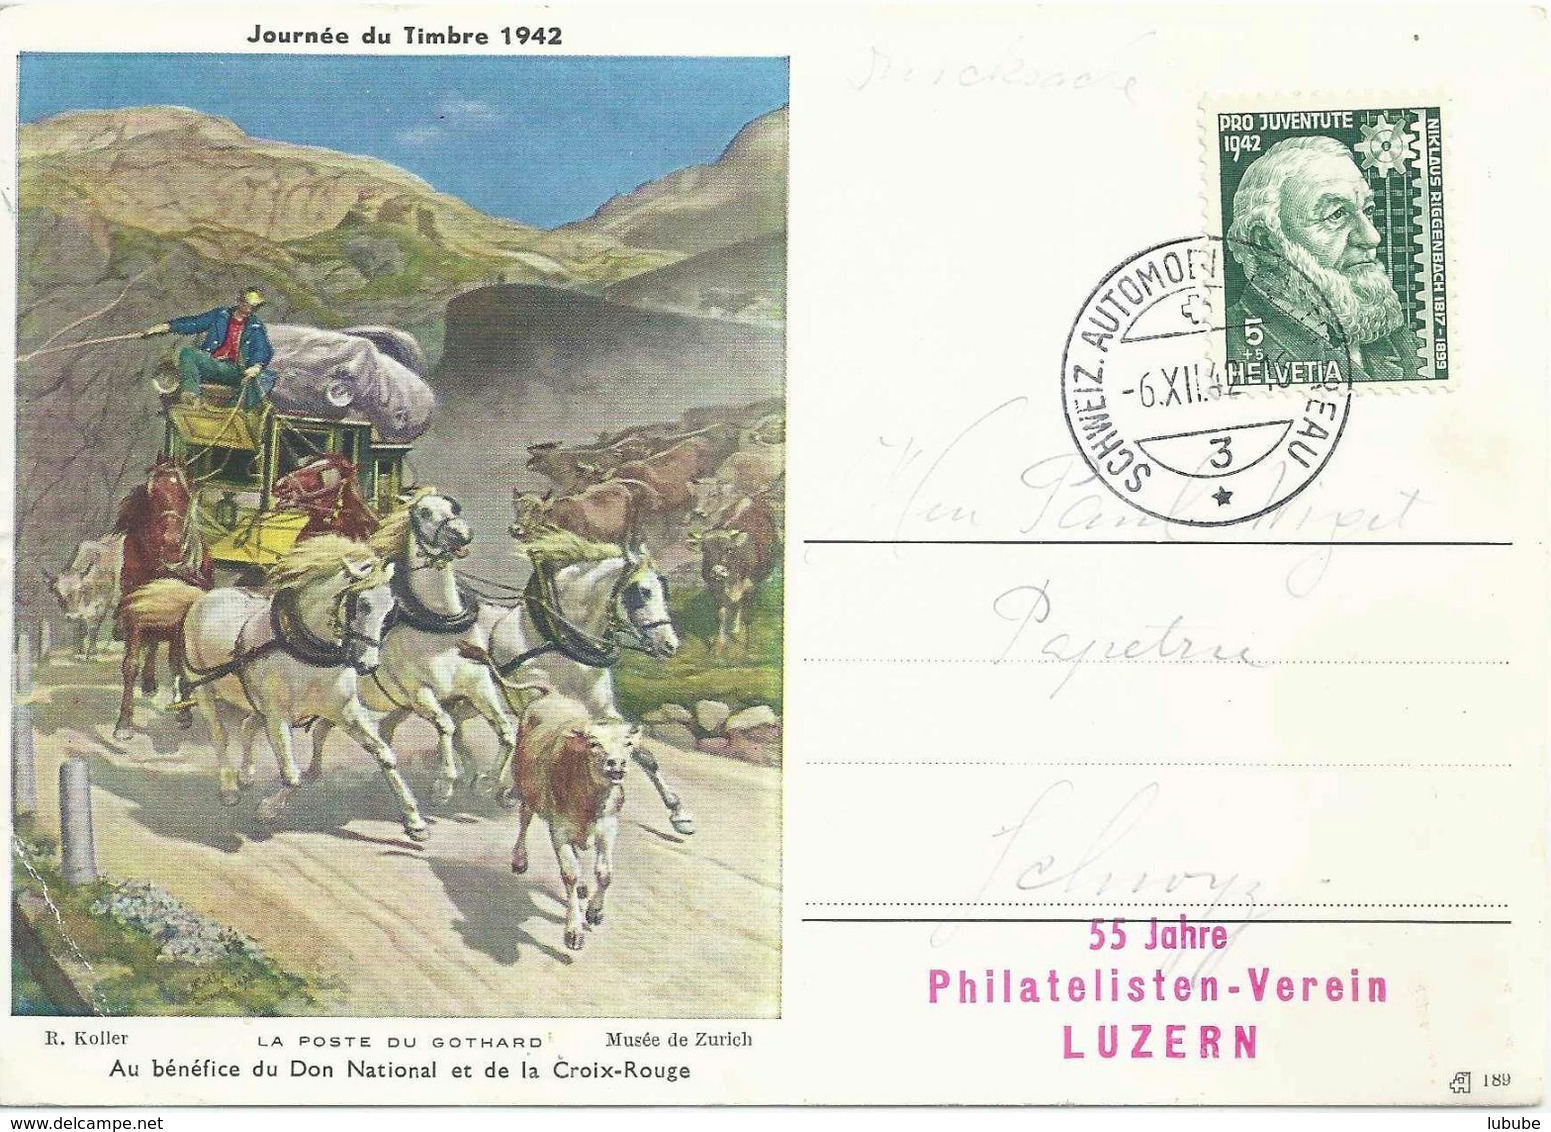 Sonderkarte  "JdT - La Poste Du Gothard"  (55 Jahre Philatelisten Verein Luzern)       1942 - Briefe U. Dokumente